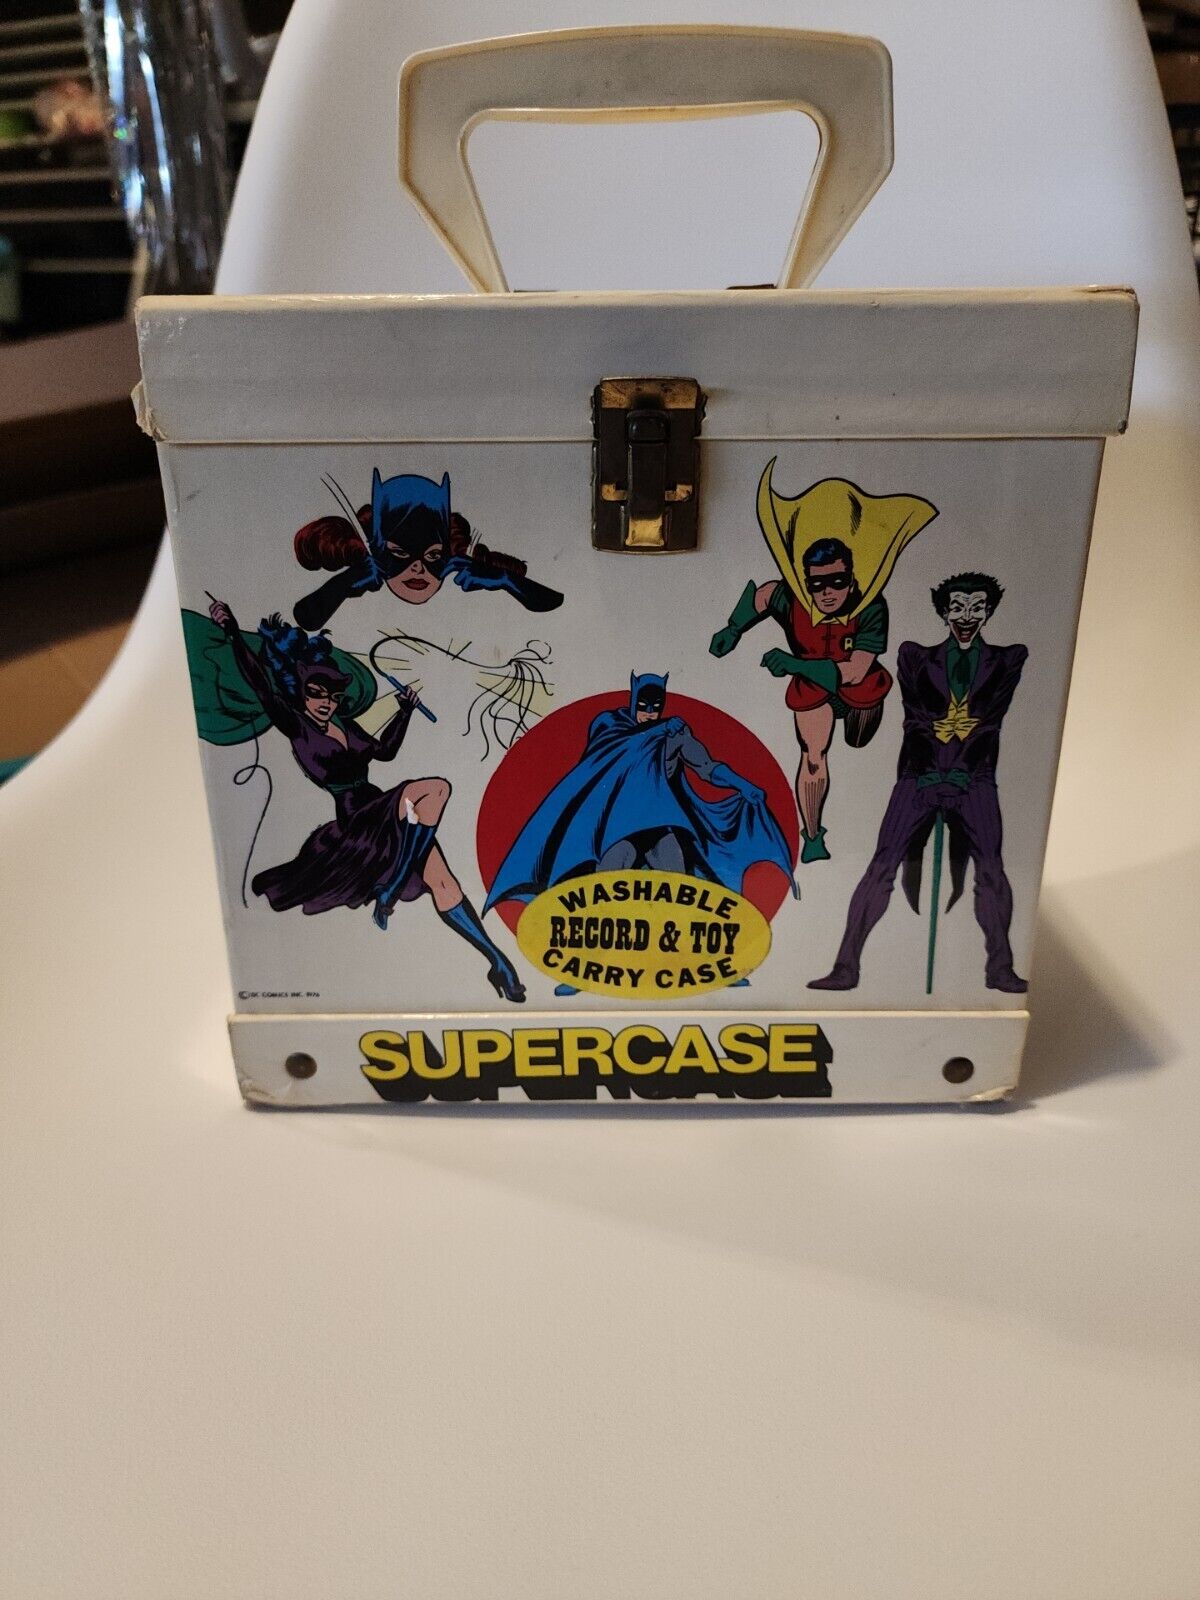 SUPERCASE DC COMICS 45 RPM RECORD HOLDER CASE 1976 BATMAN SUPERMAN JOKER BATGIRL